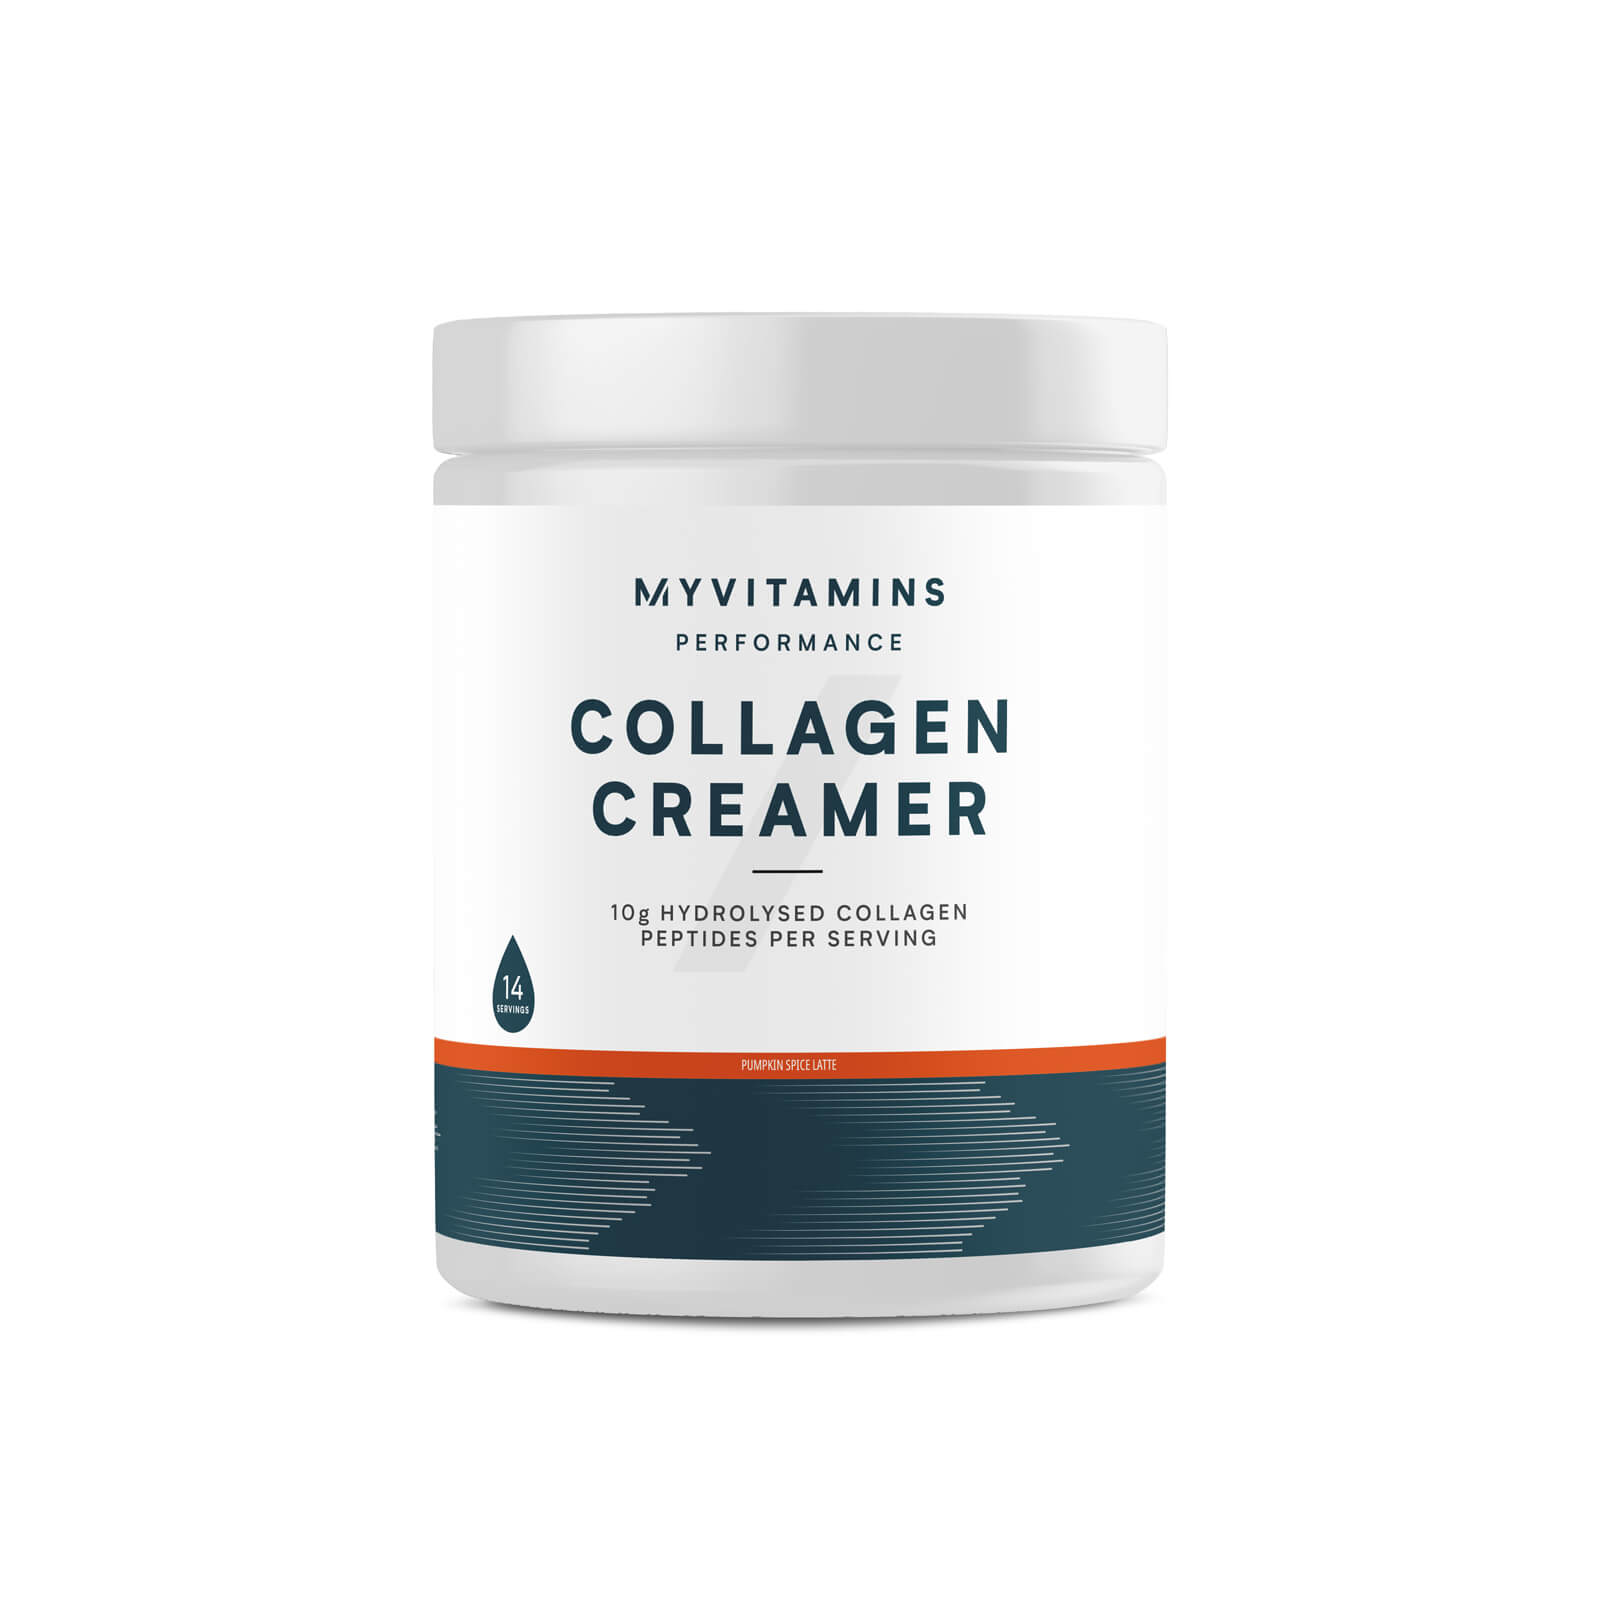 Myvitamins Collagen Creamer Tub - 212g - Pumpkin Spice Latte